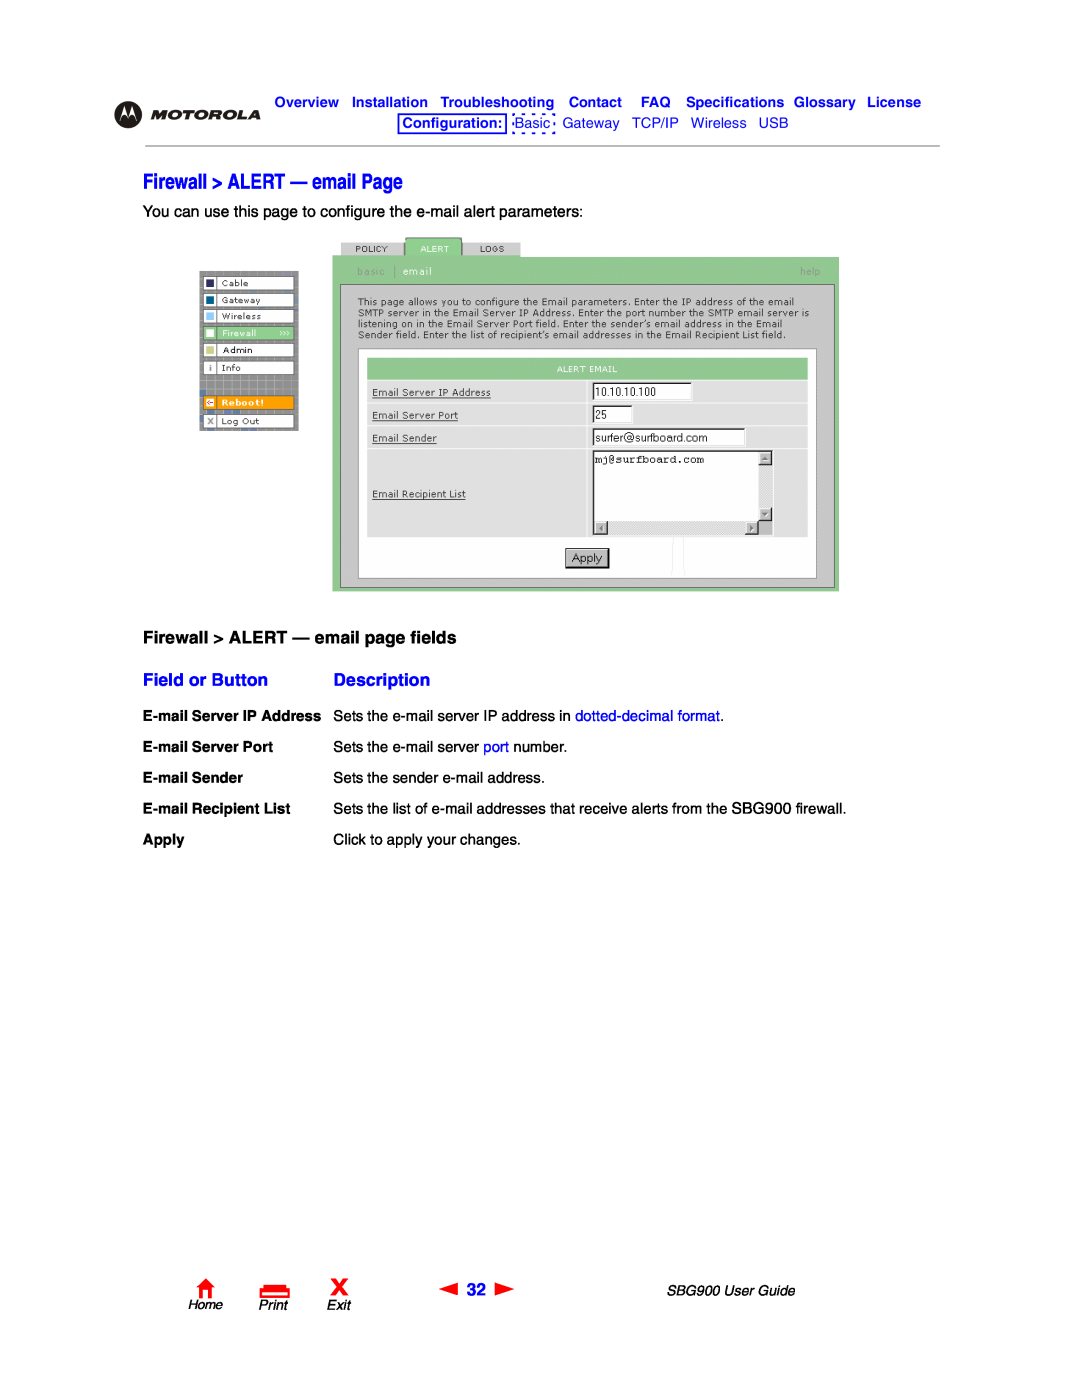 Motorola SBG900 manual Firewall ALERT - email Page, Firewall ALERT - email page fields, Field or Button, Description 